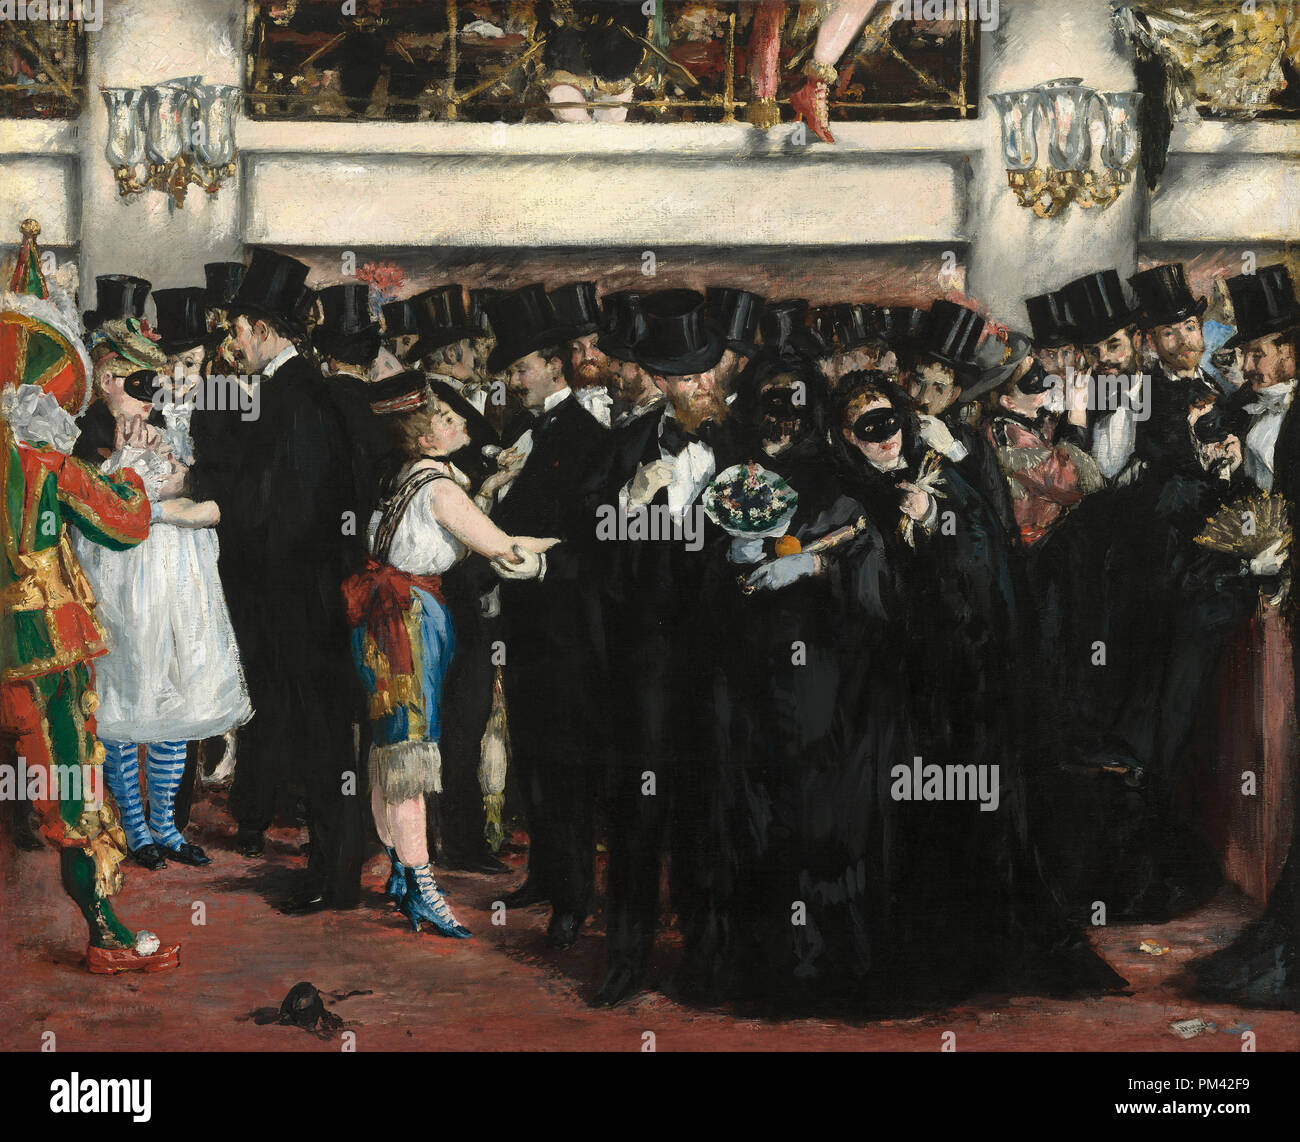 Maskenball in der Oper. Stand: 1873. Maße: gesamt: 59,1 x 72,5 cm (23 1/4 x 28 9/16 in.) gerahmt: 80 x 94 cm (31 1/2 x 37 in.). Medium: Öl auf Leinwand. Museum: Nationalgalerie, Washington DC. Autor: Edouard Manet. Stockfoto